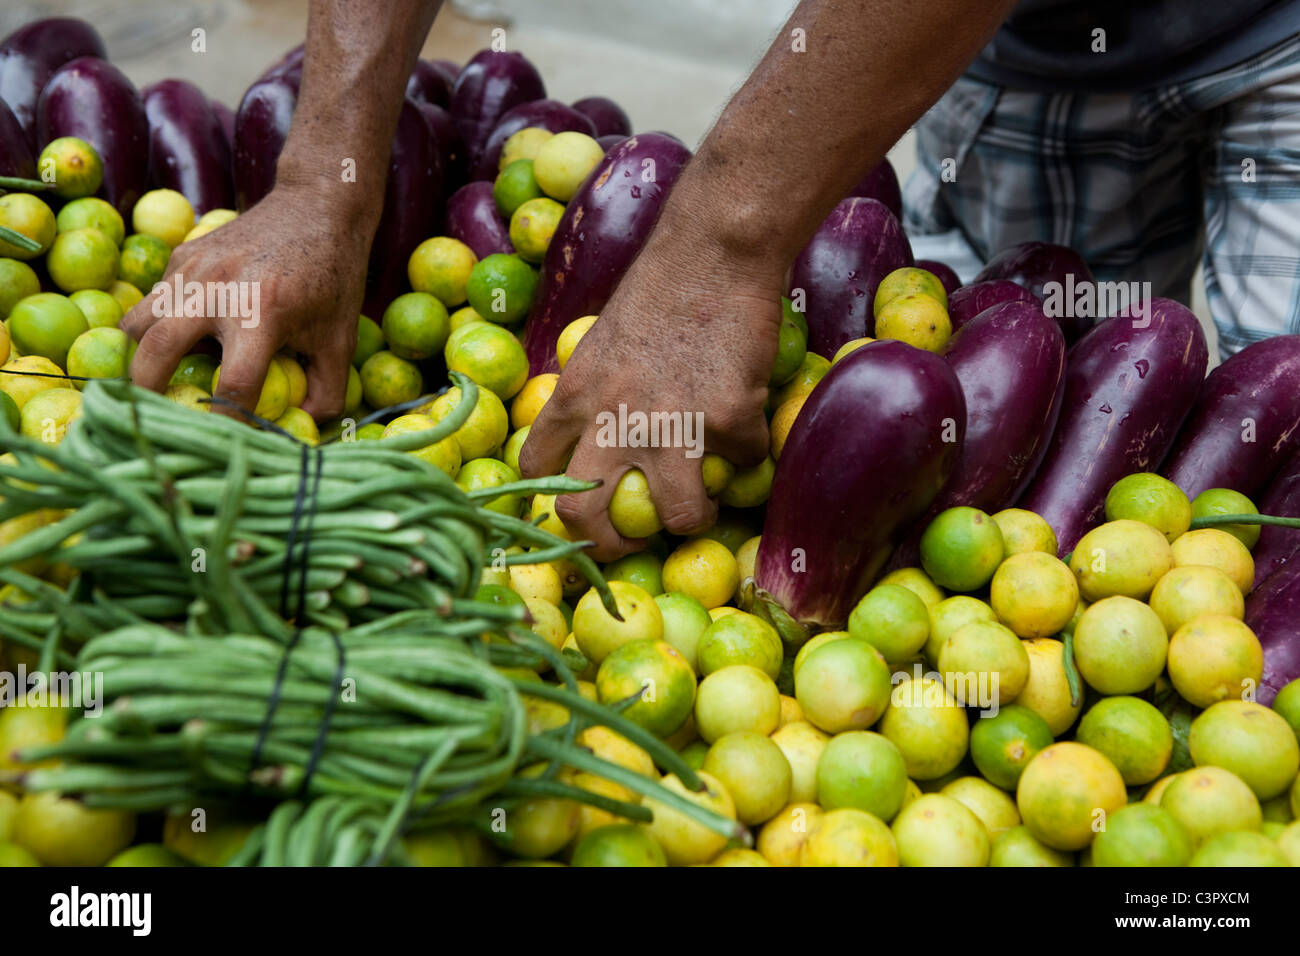 Fruit and vegetable market in Ladakh, Himalaya, India. Stock Photo